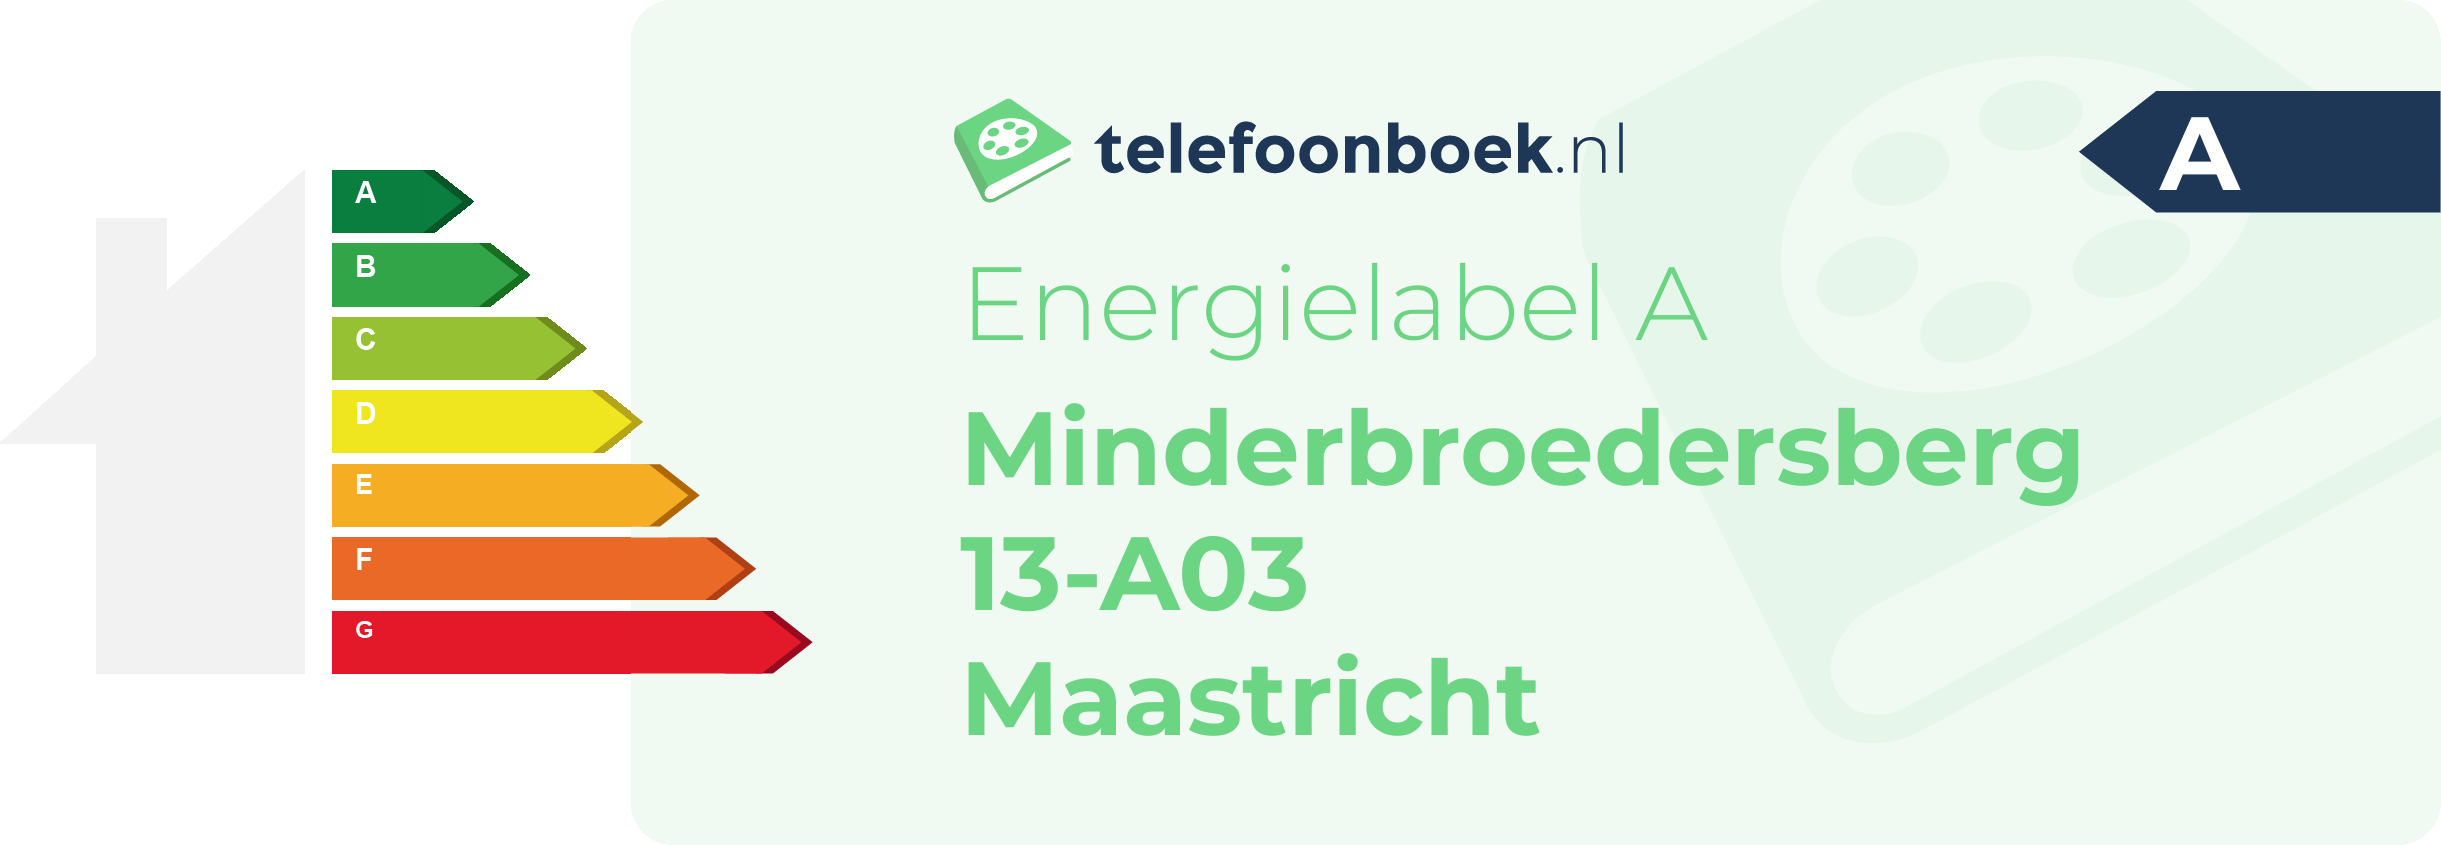 Energielabel Minderbroedersberg 13-A03 Maastricht